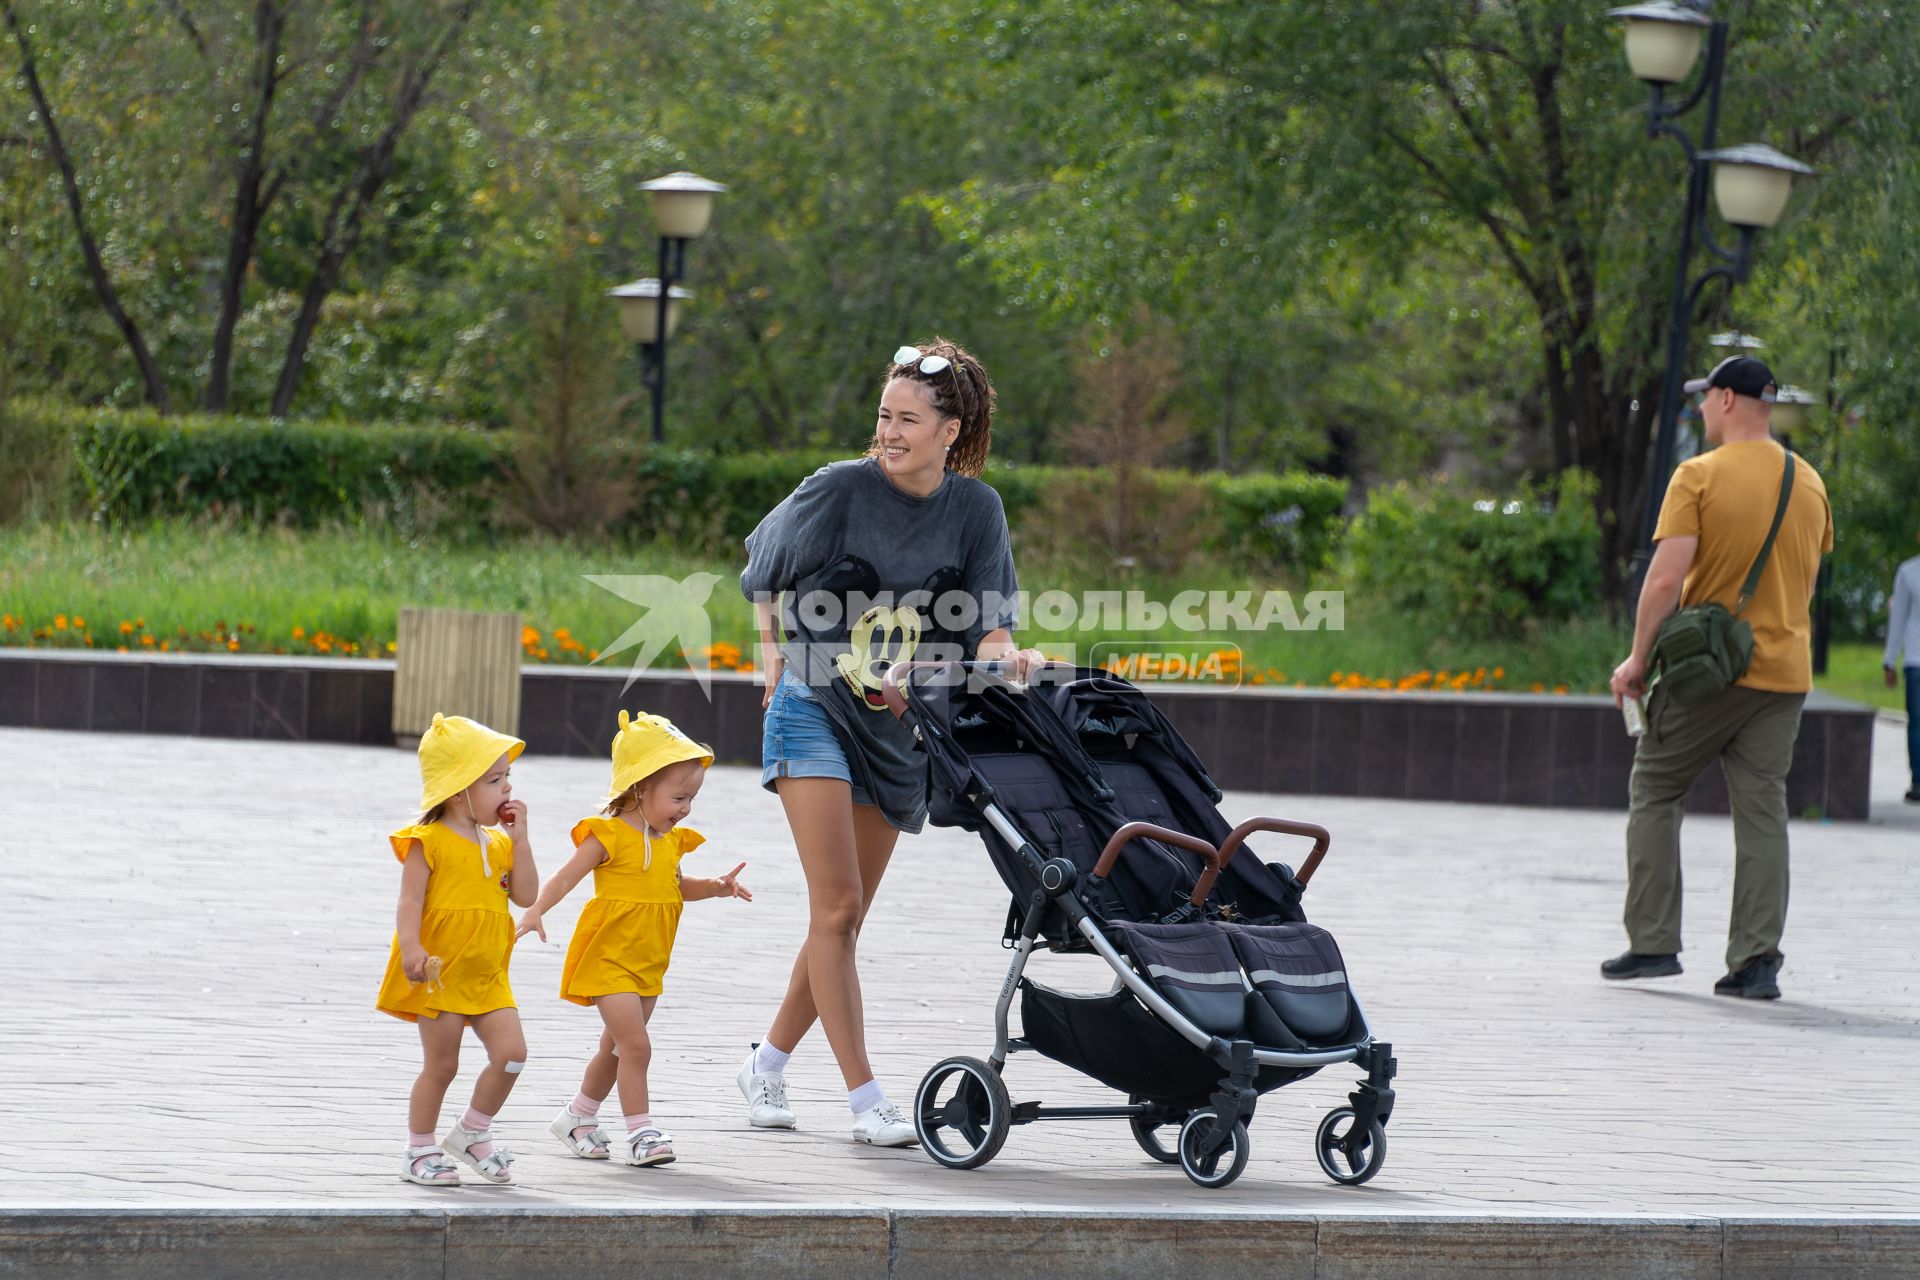 Забайкальский край, г. Чита. Девушка с детьми на одной из улиц города.